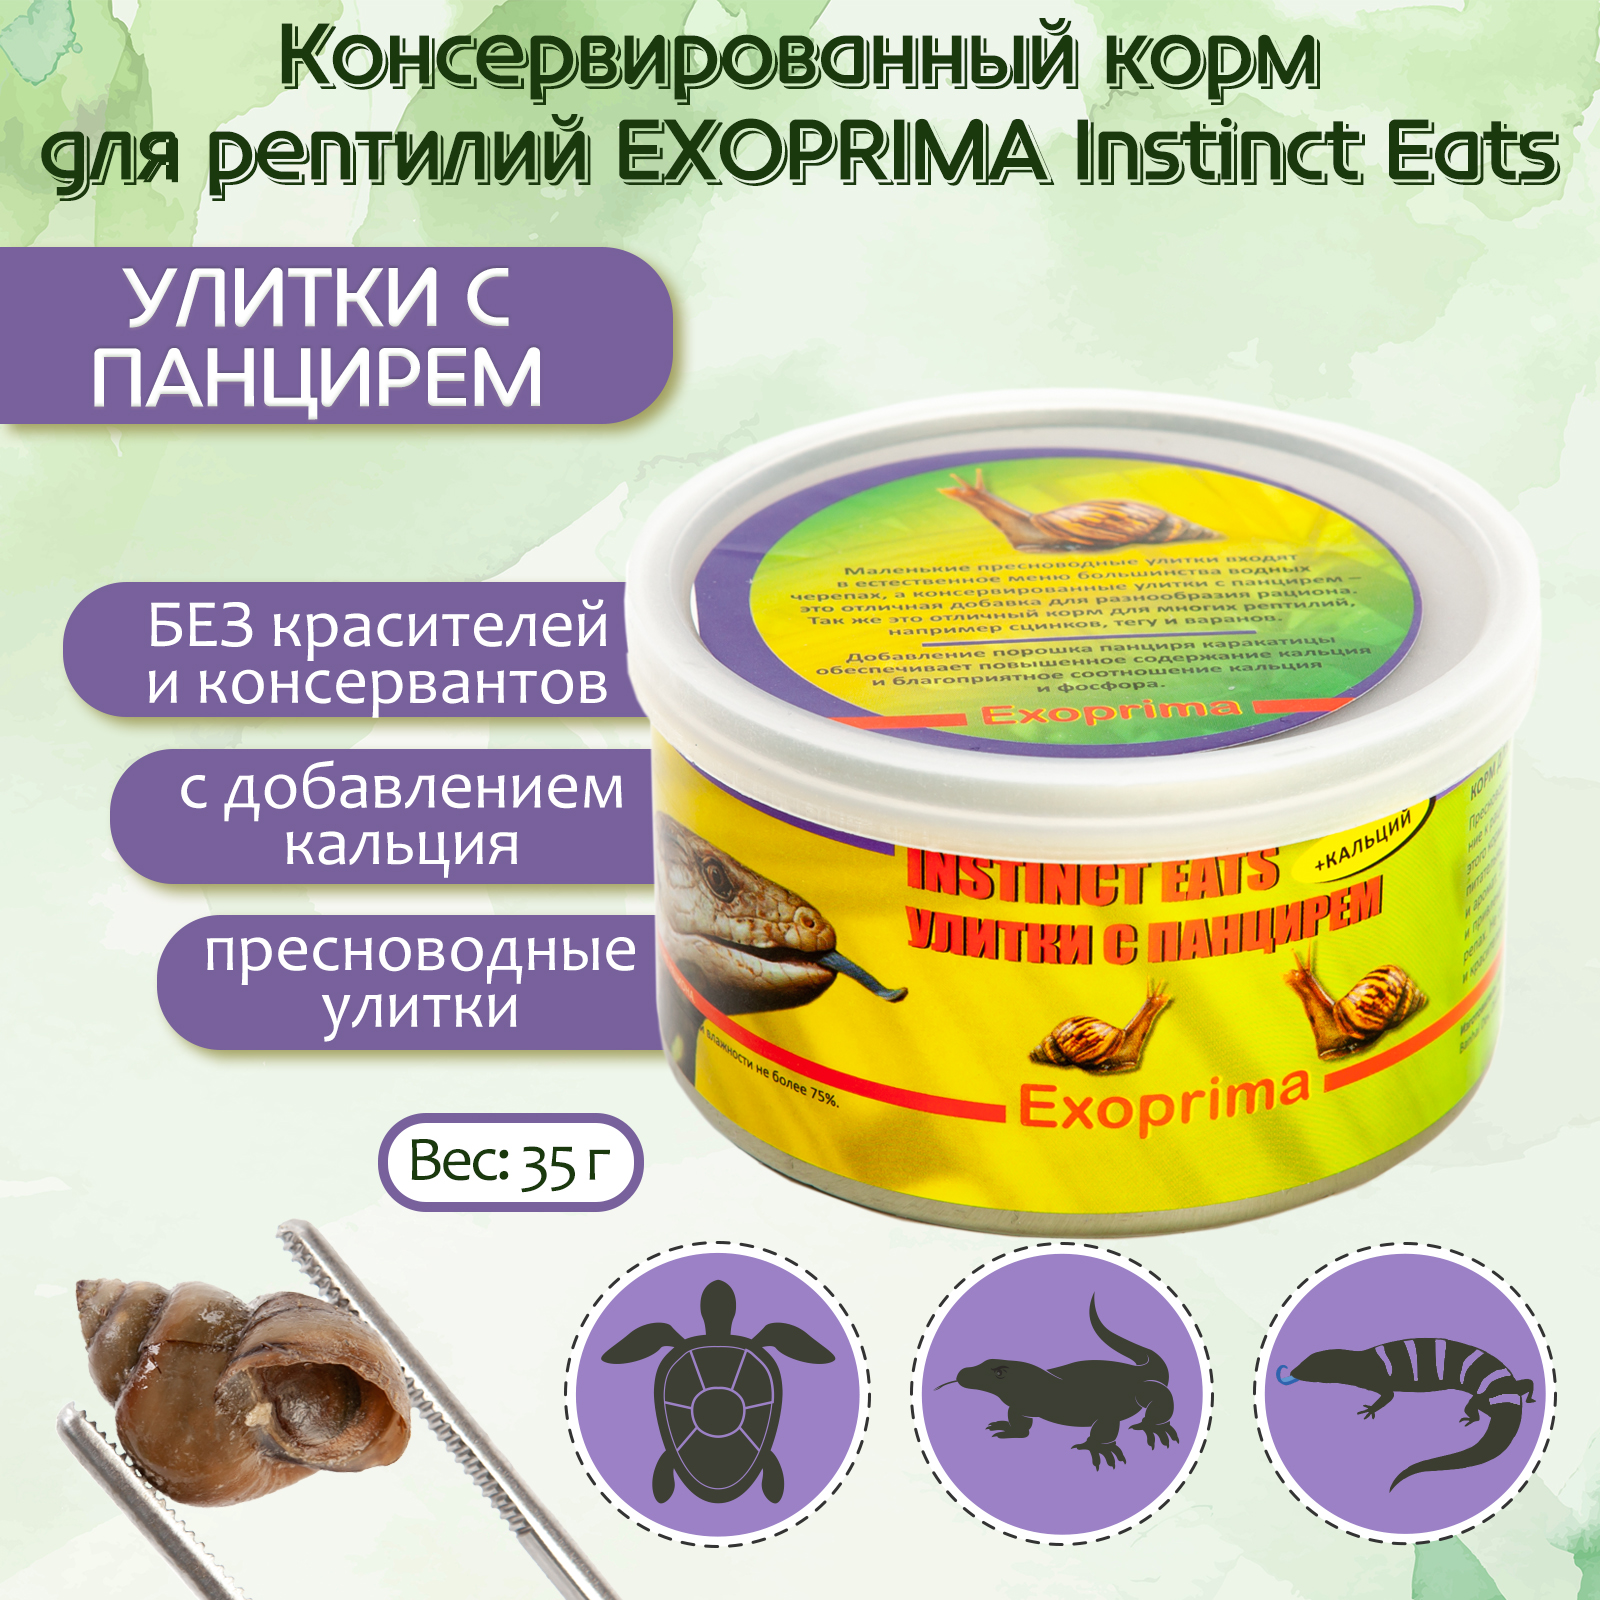 Корм для рептилий Exoprima Instinct Eats, улитки с панцирем, З5 гр